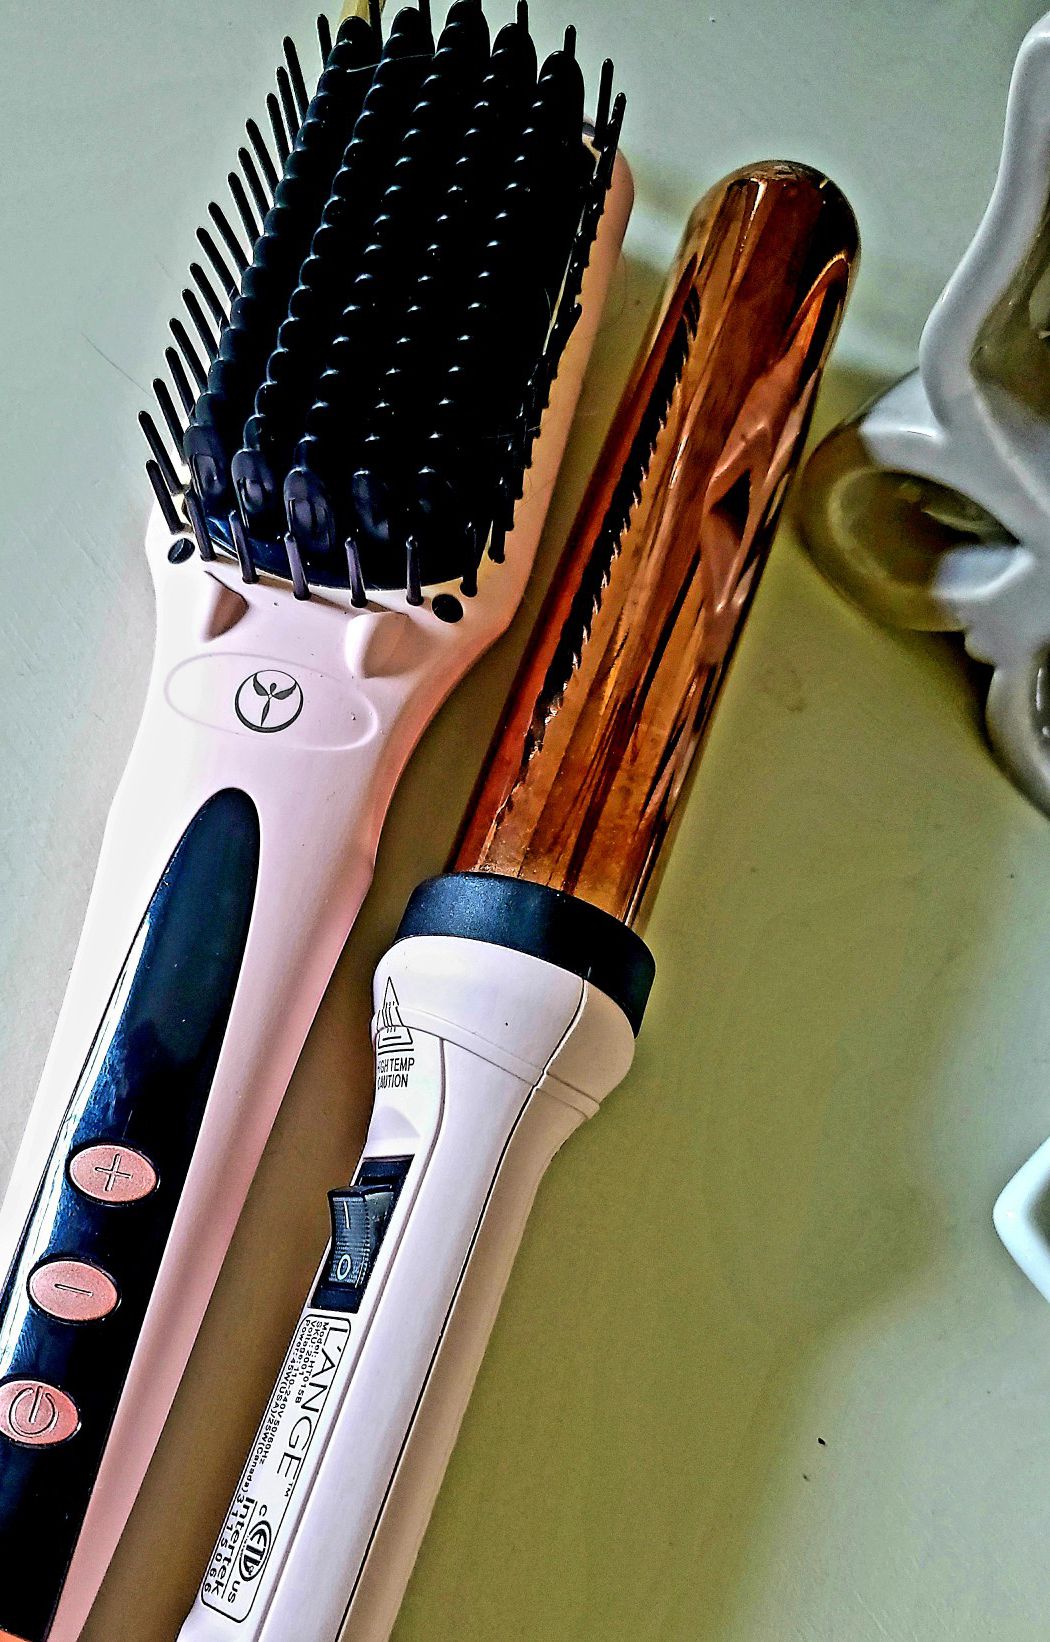 L'ange Hot Brush Straightener and 32mm titanium wand